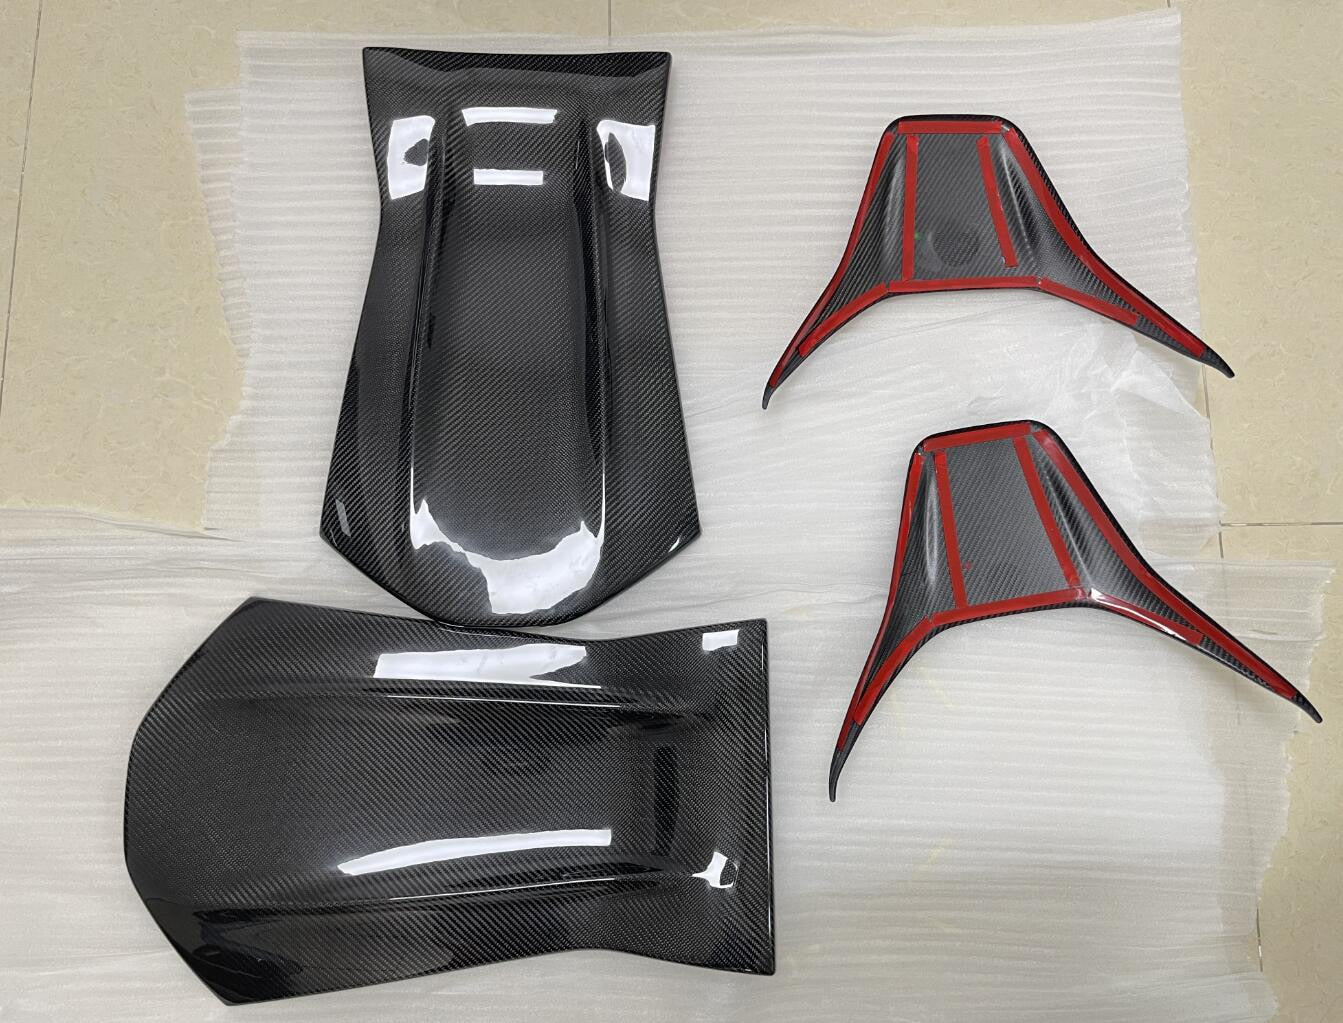 2014-17 Mercedes Benz AMG Models Carbon Fiber Seat Backing Overlays